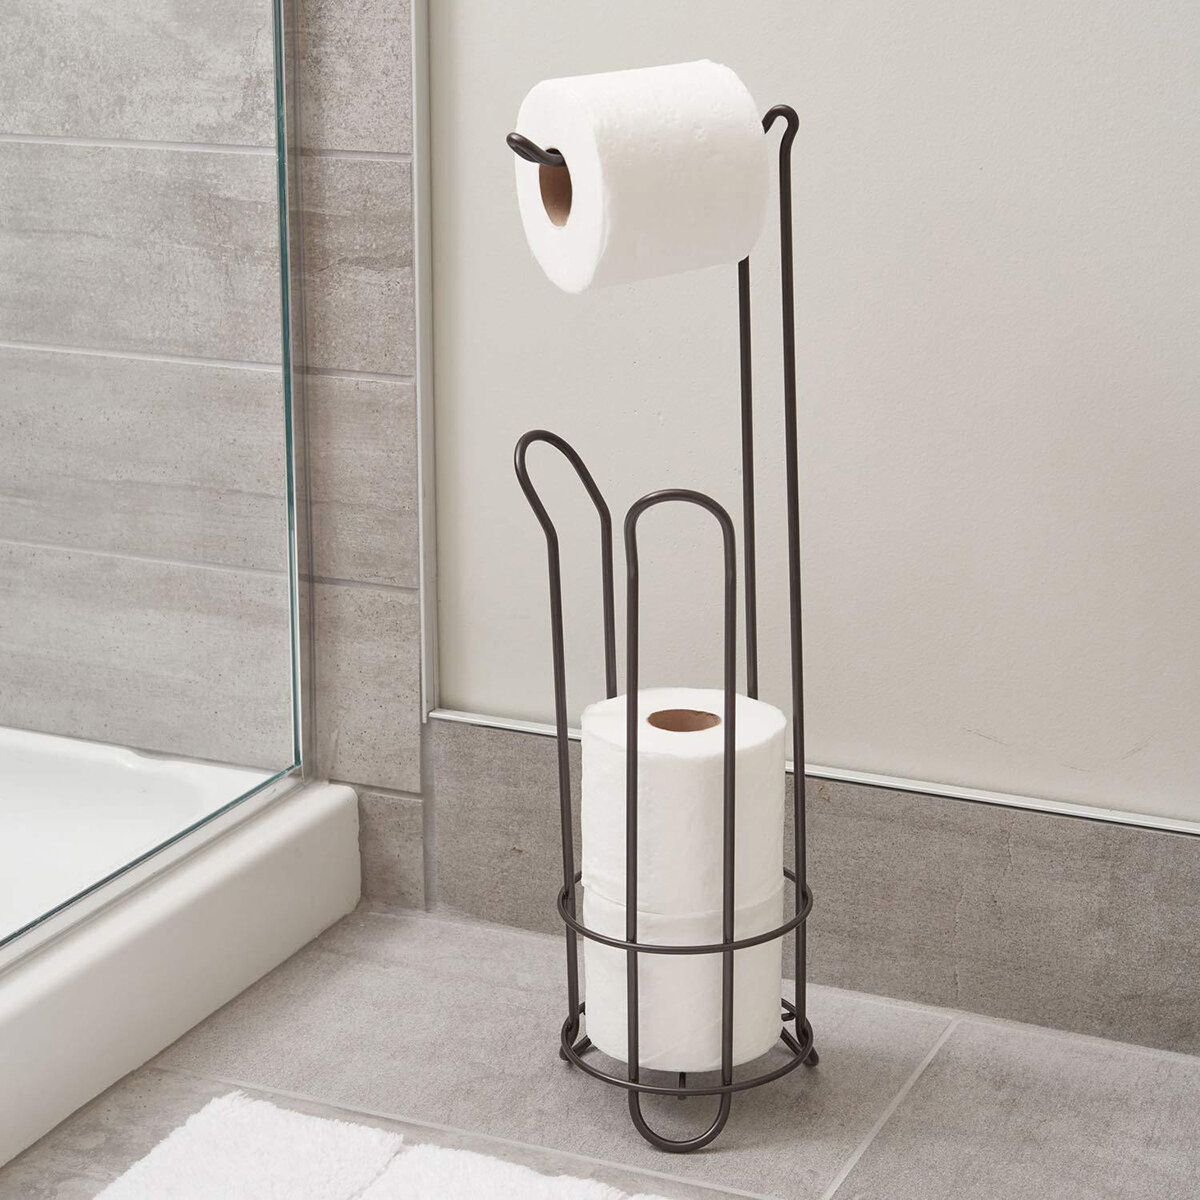 

17*17*62 cm Vintage Freestanding Toilet Paper Roll Holder for Bathroom Storage